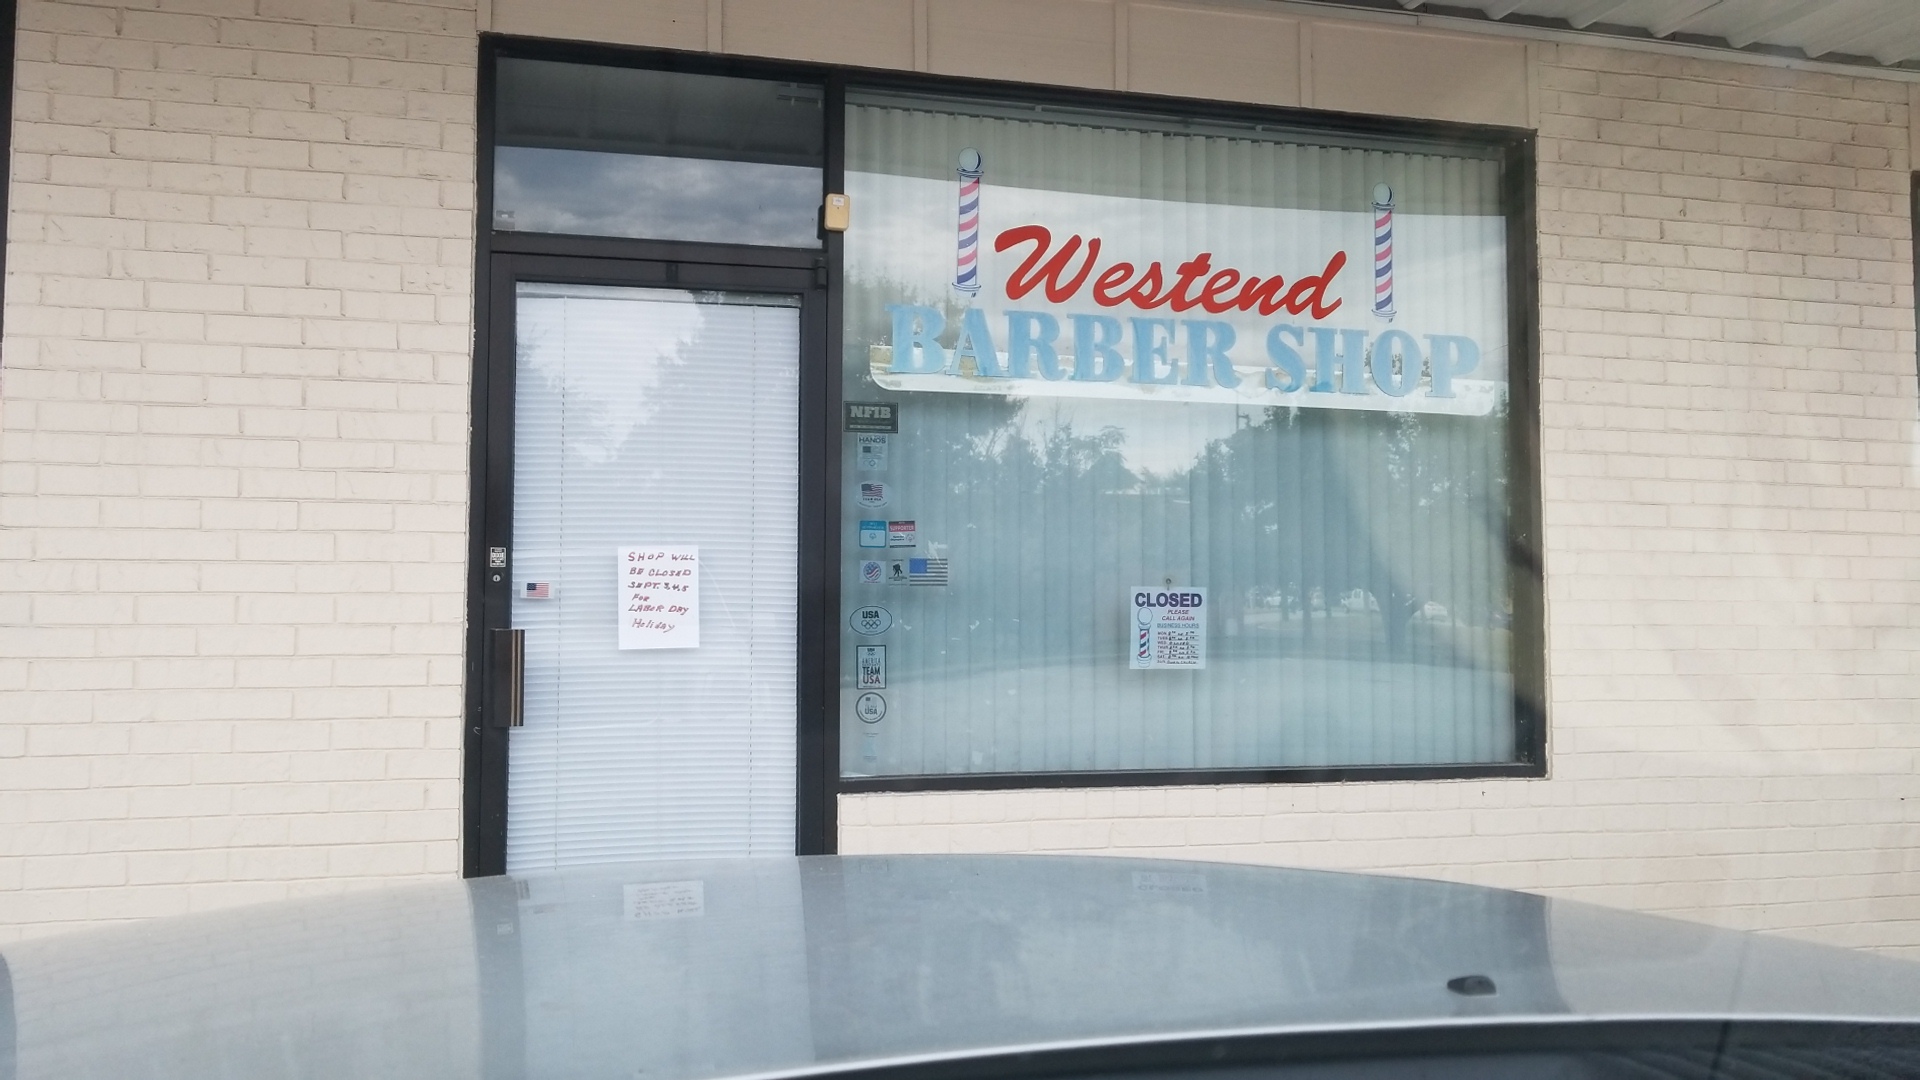 Westend Barber Shop